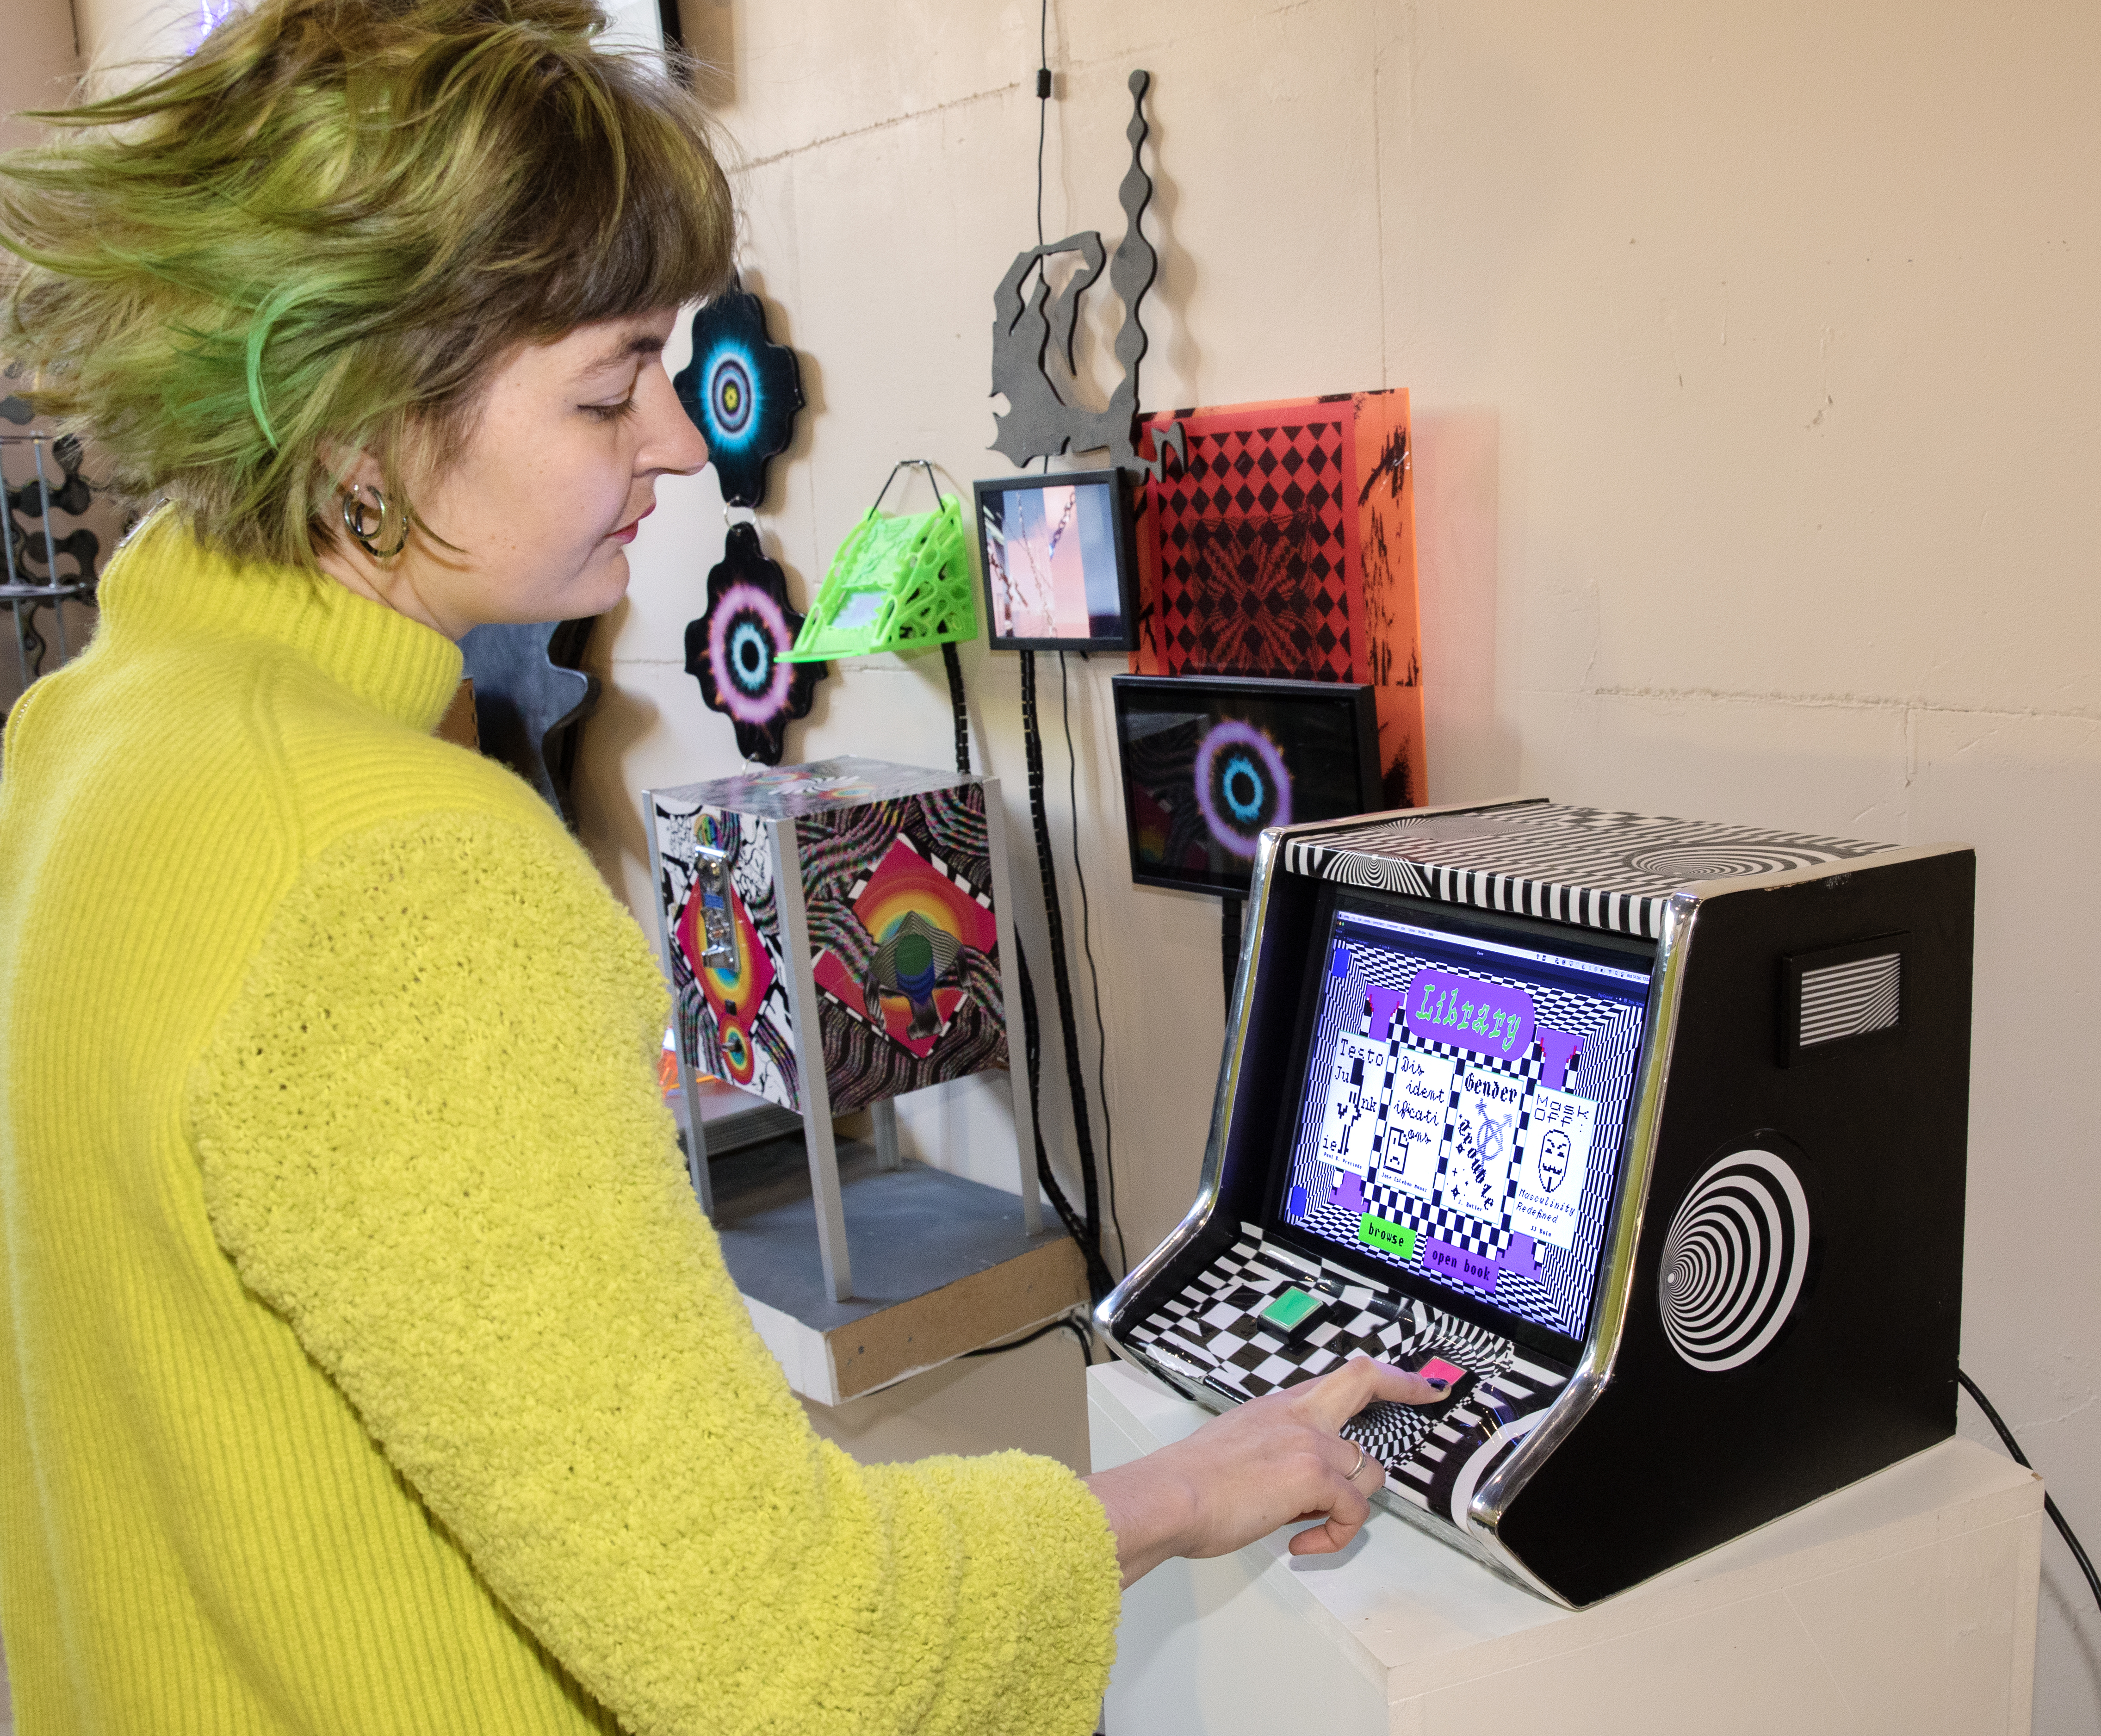 Kunstenaar Cyanne van den Houten (gele trui, groen kort haar) demonstreert haar prototype game op een ouderwetse spelcomputer met twee knoppen. De spelcomputer is vormgegeven als het spel, met een grafische zwart-wit print.